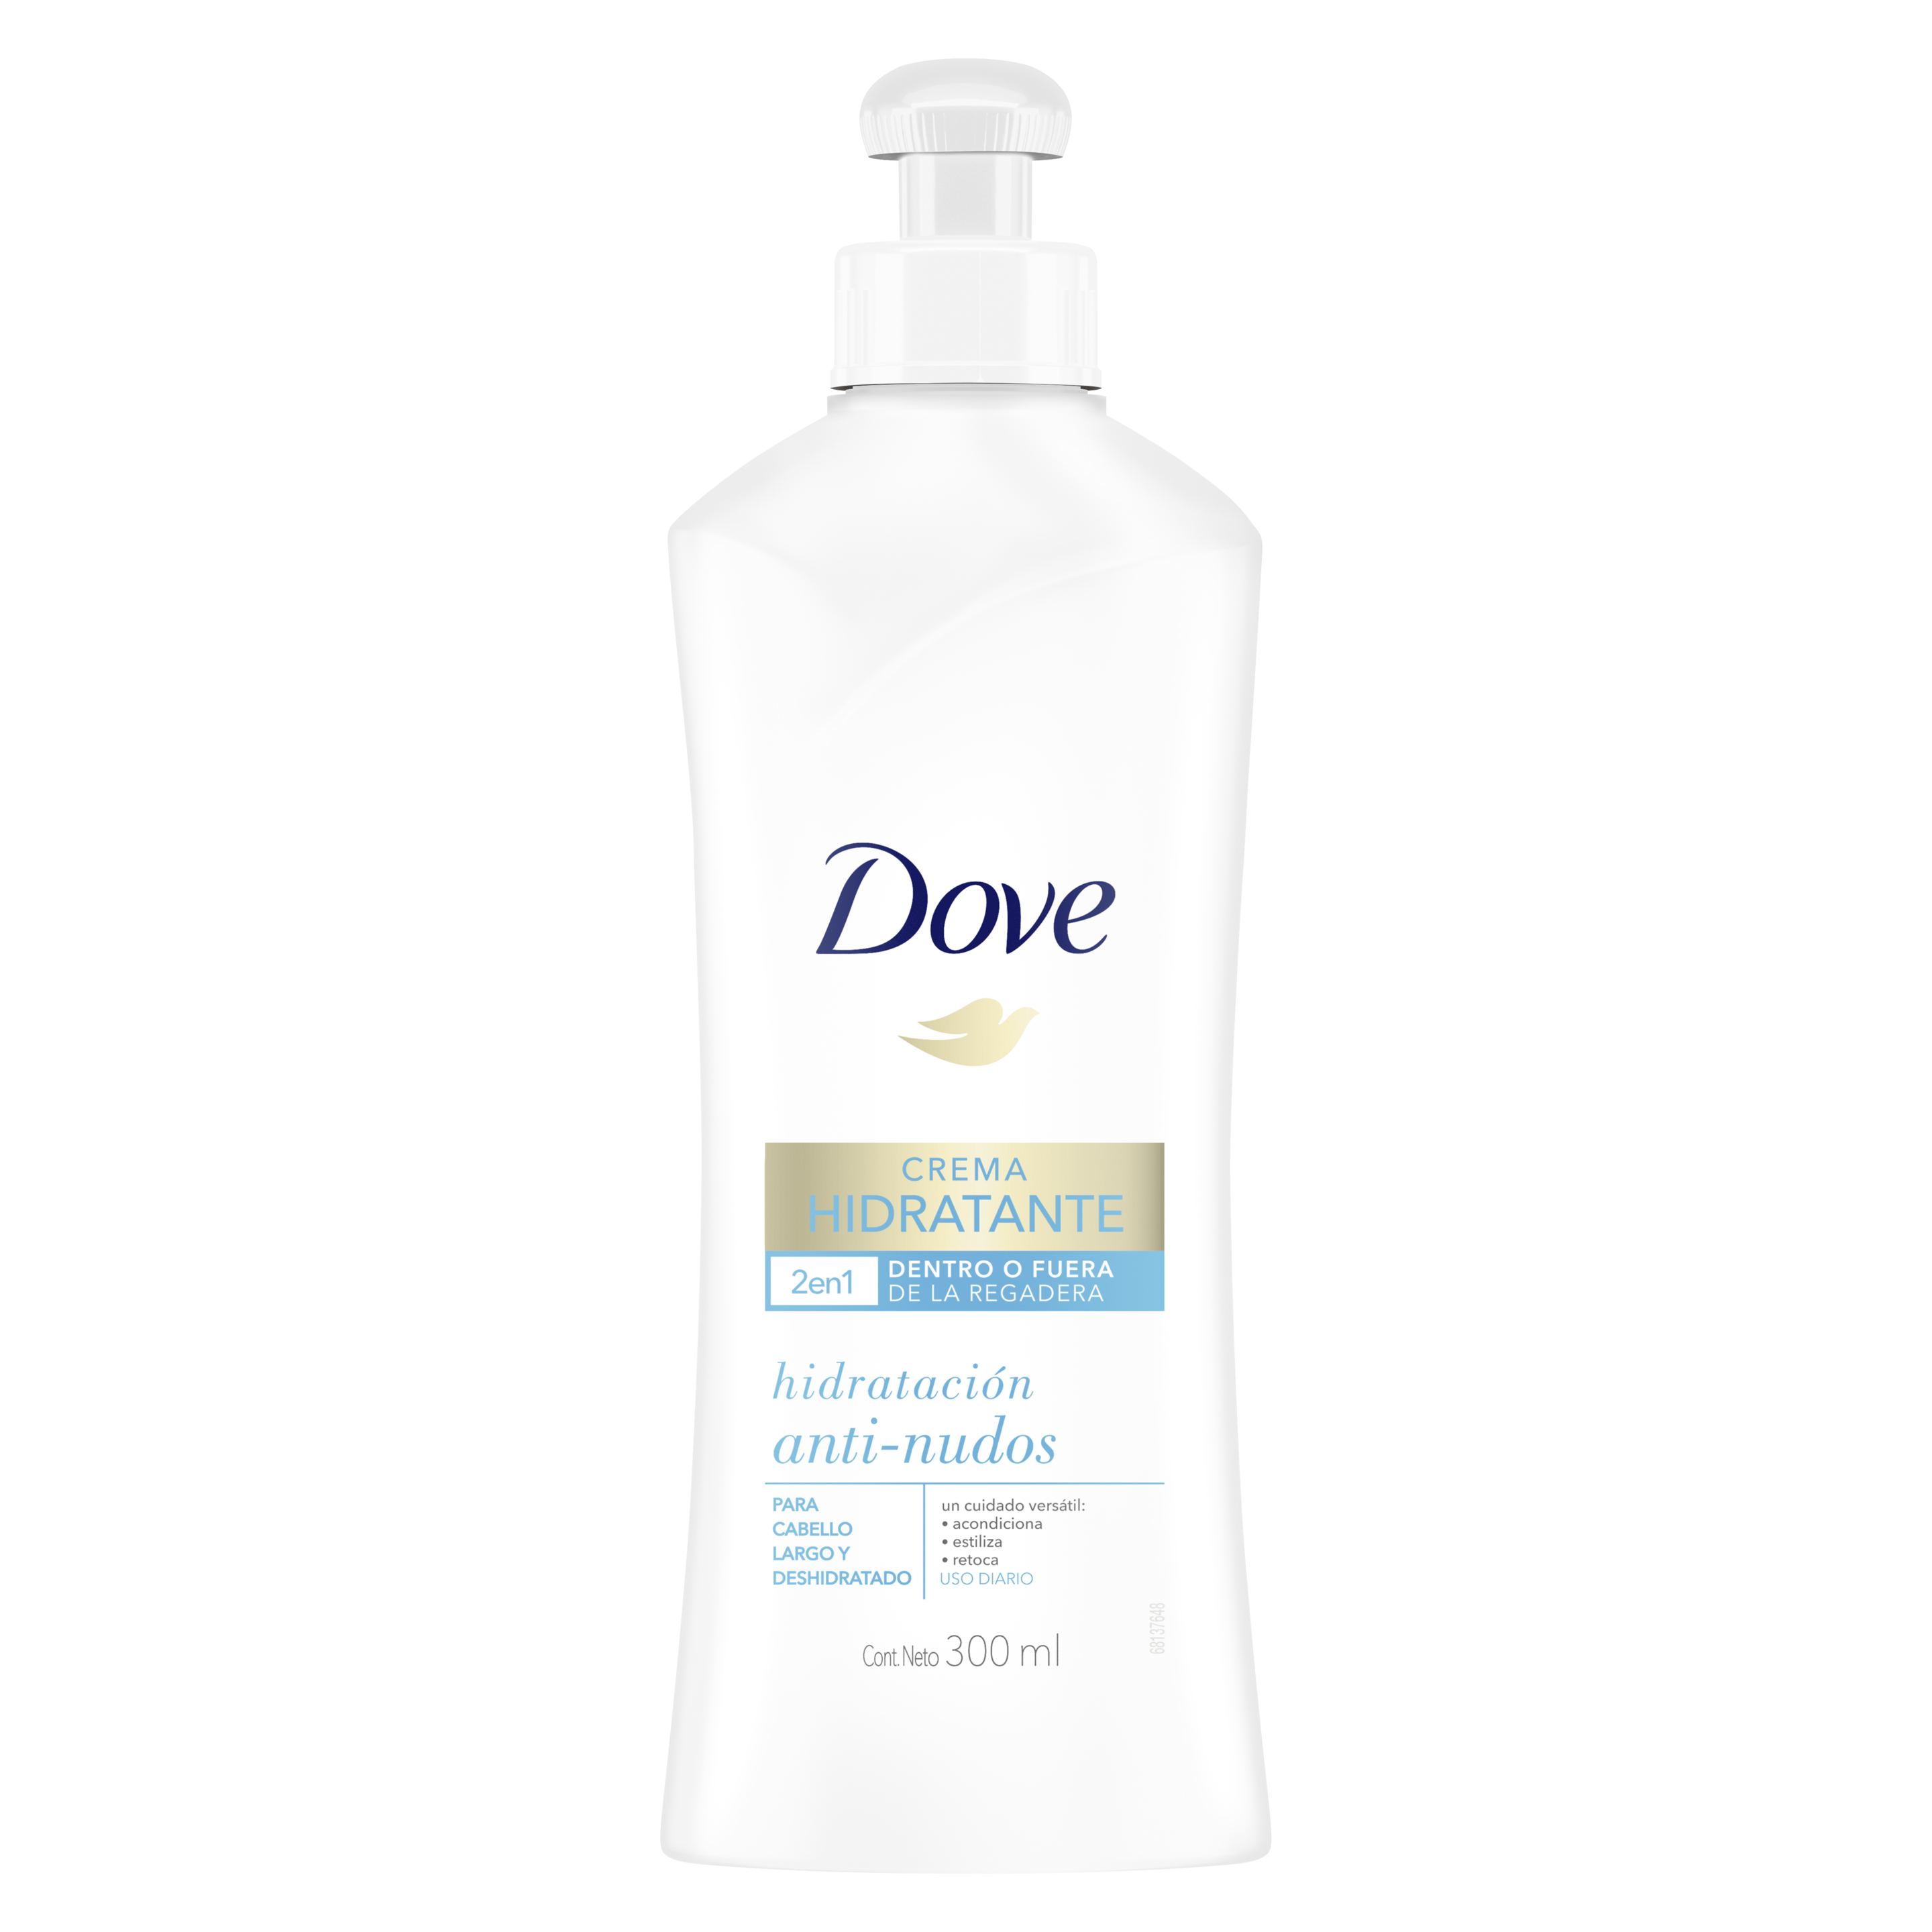 Dove Crema Hidratante Diaria Hidratación Anti-Nudos 300ml